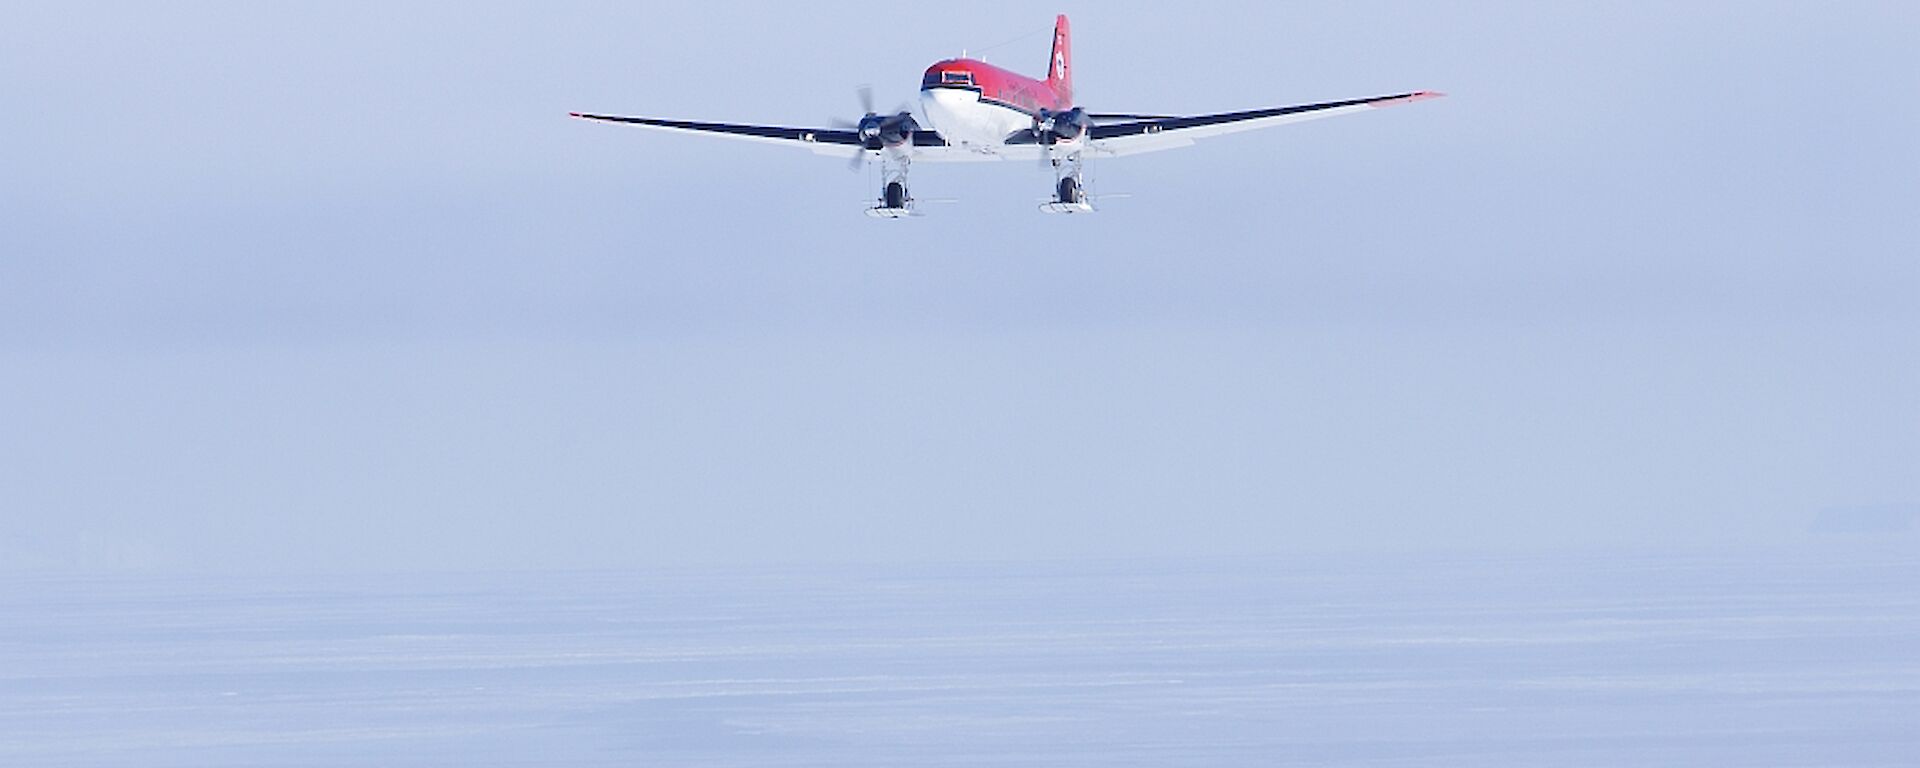 Basler twin turbo prop on final landing approach